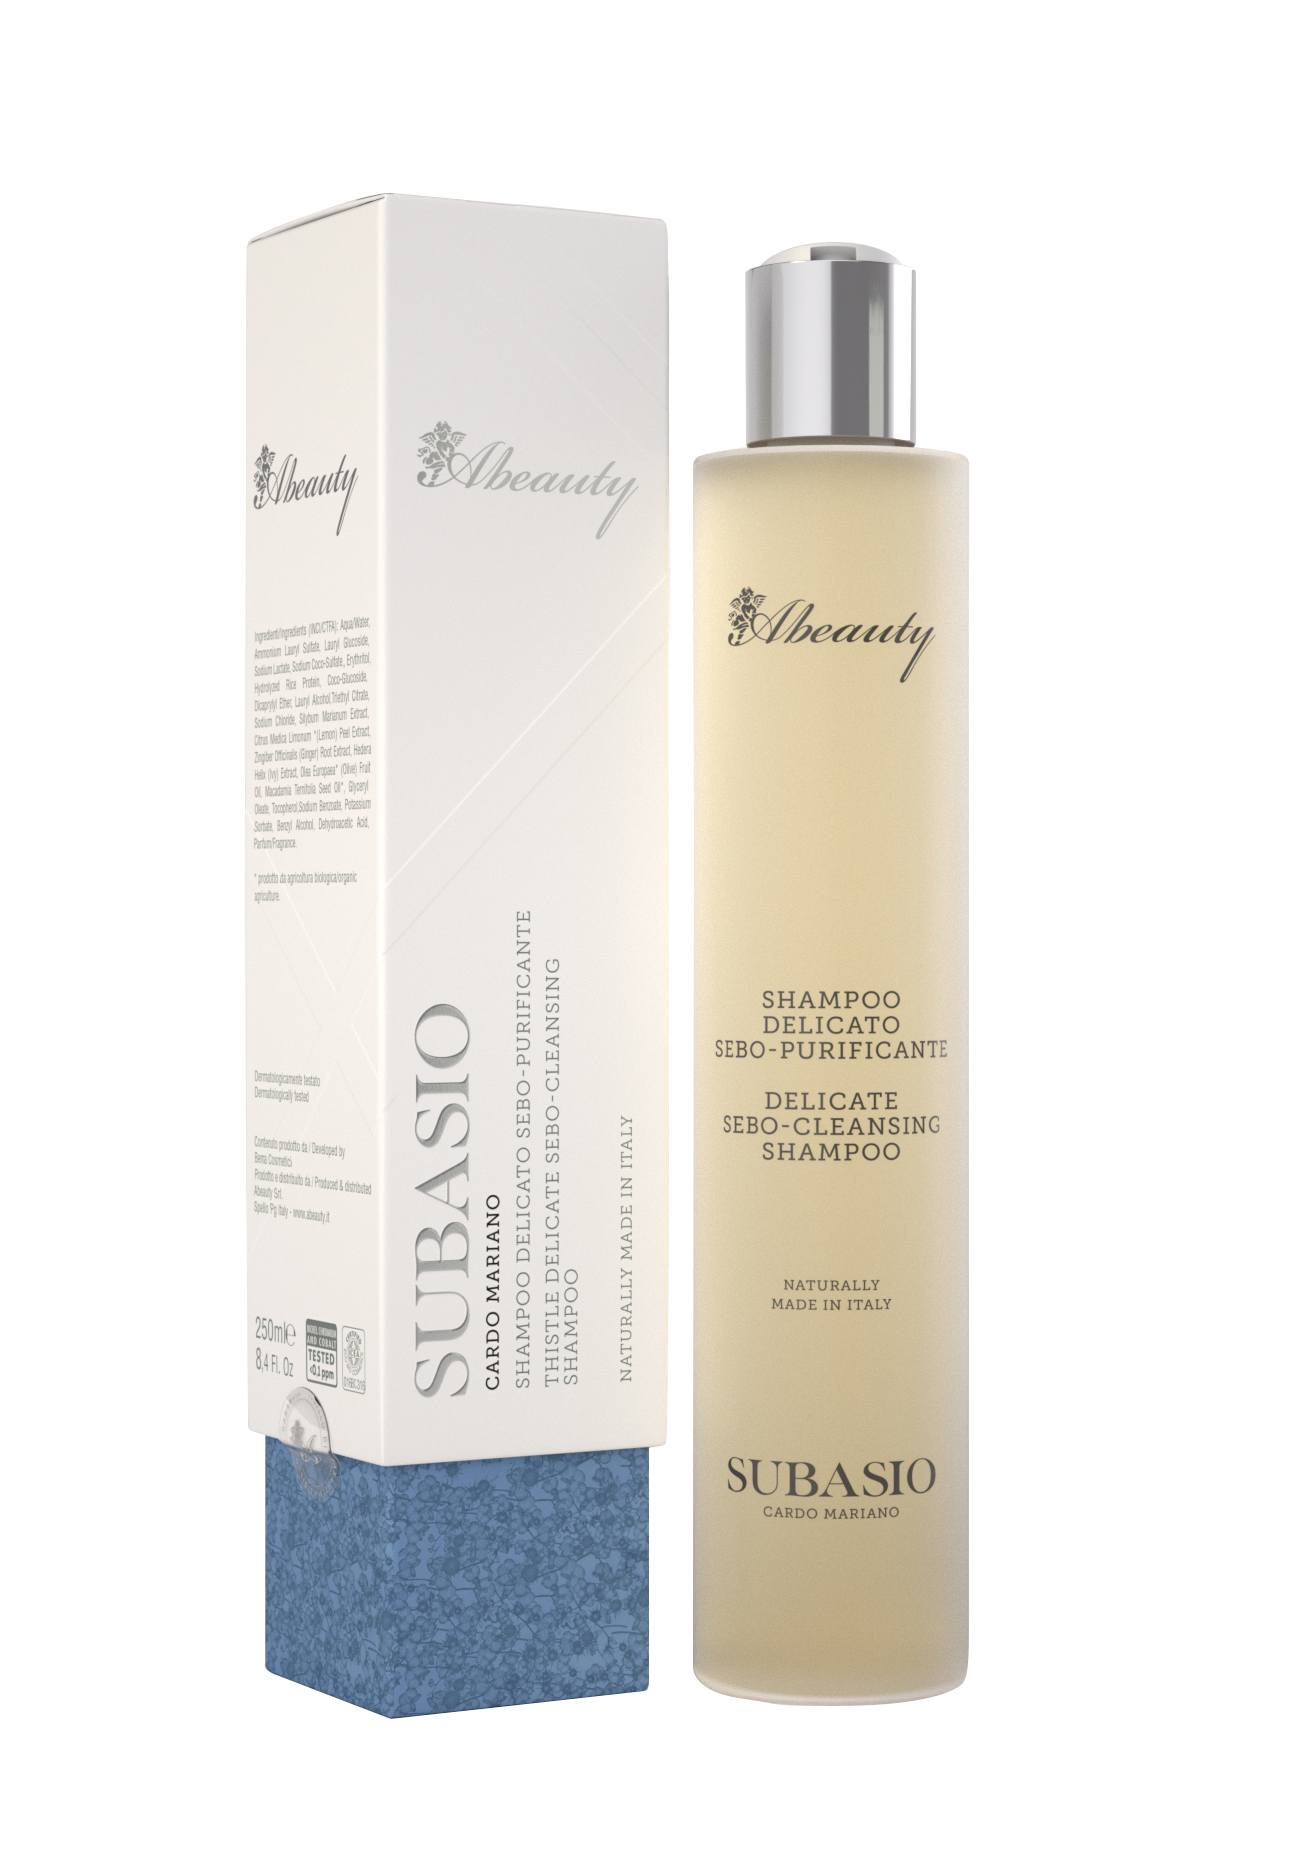 Shampoo Delicato Sebo-Purificante 250ml.